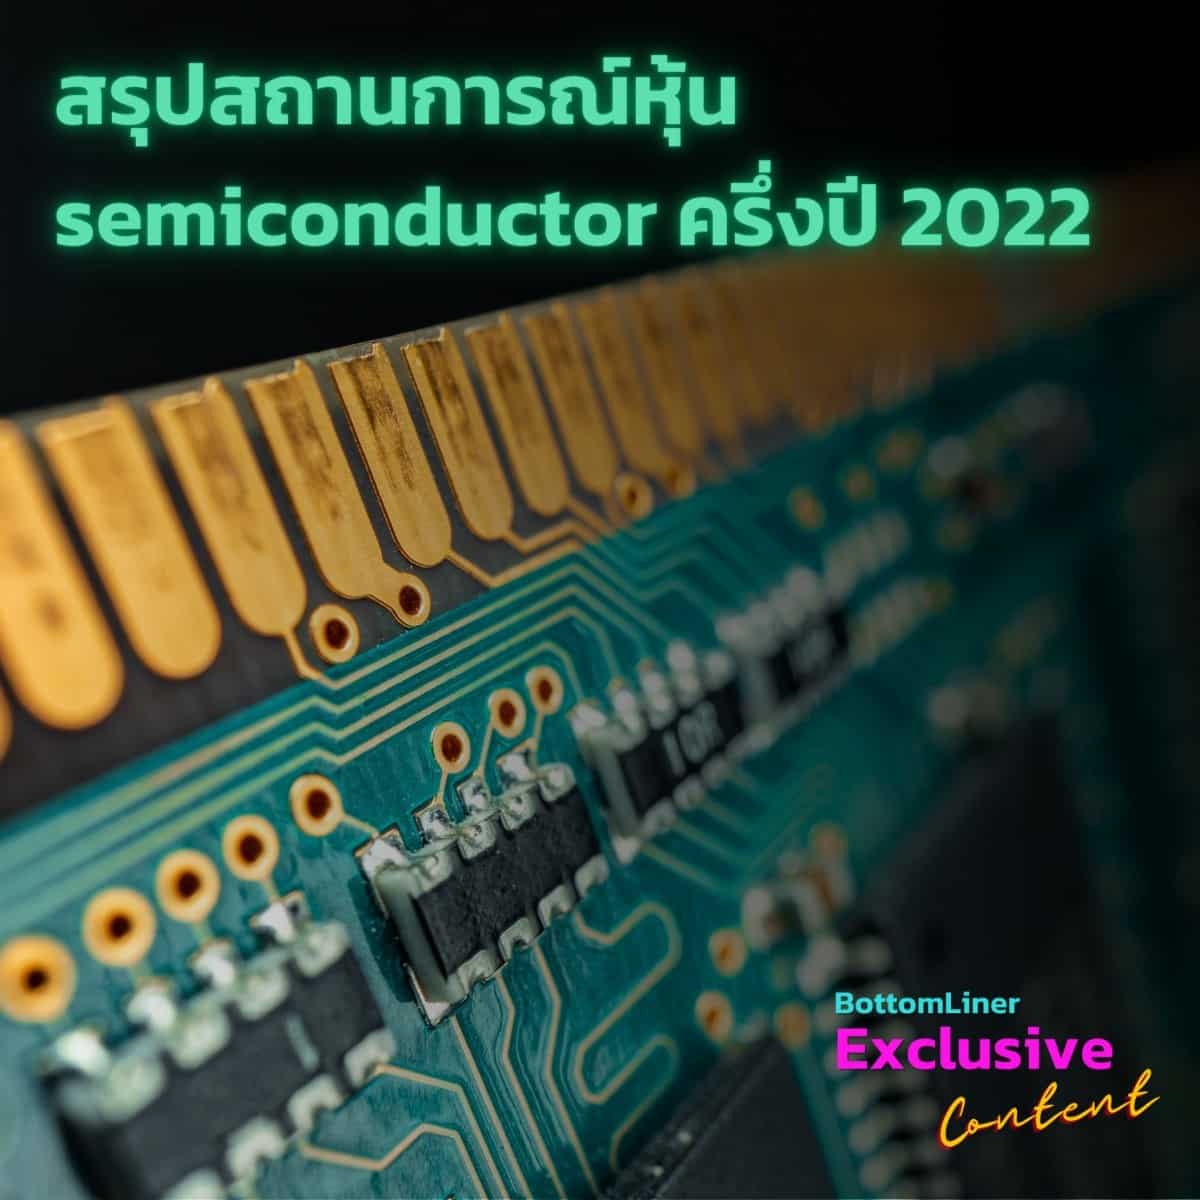 สรุปสถานการณ์หุ้น semiconductor ครึ่งปี 2022